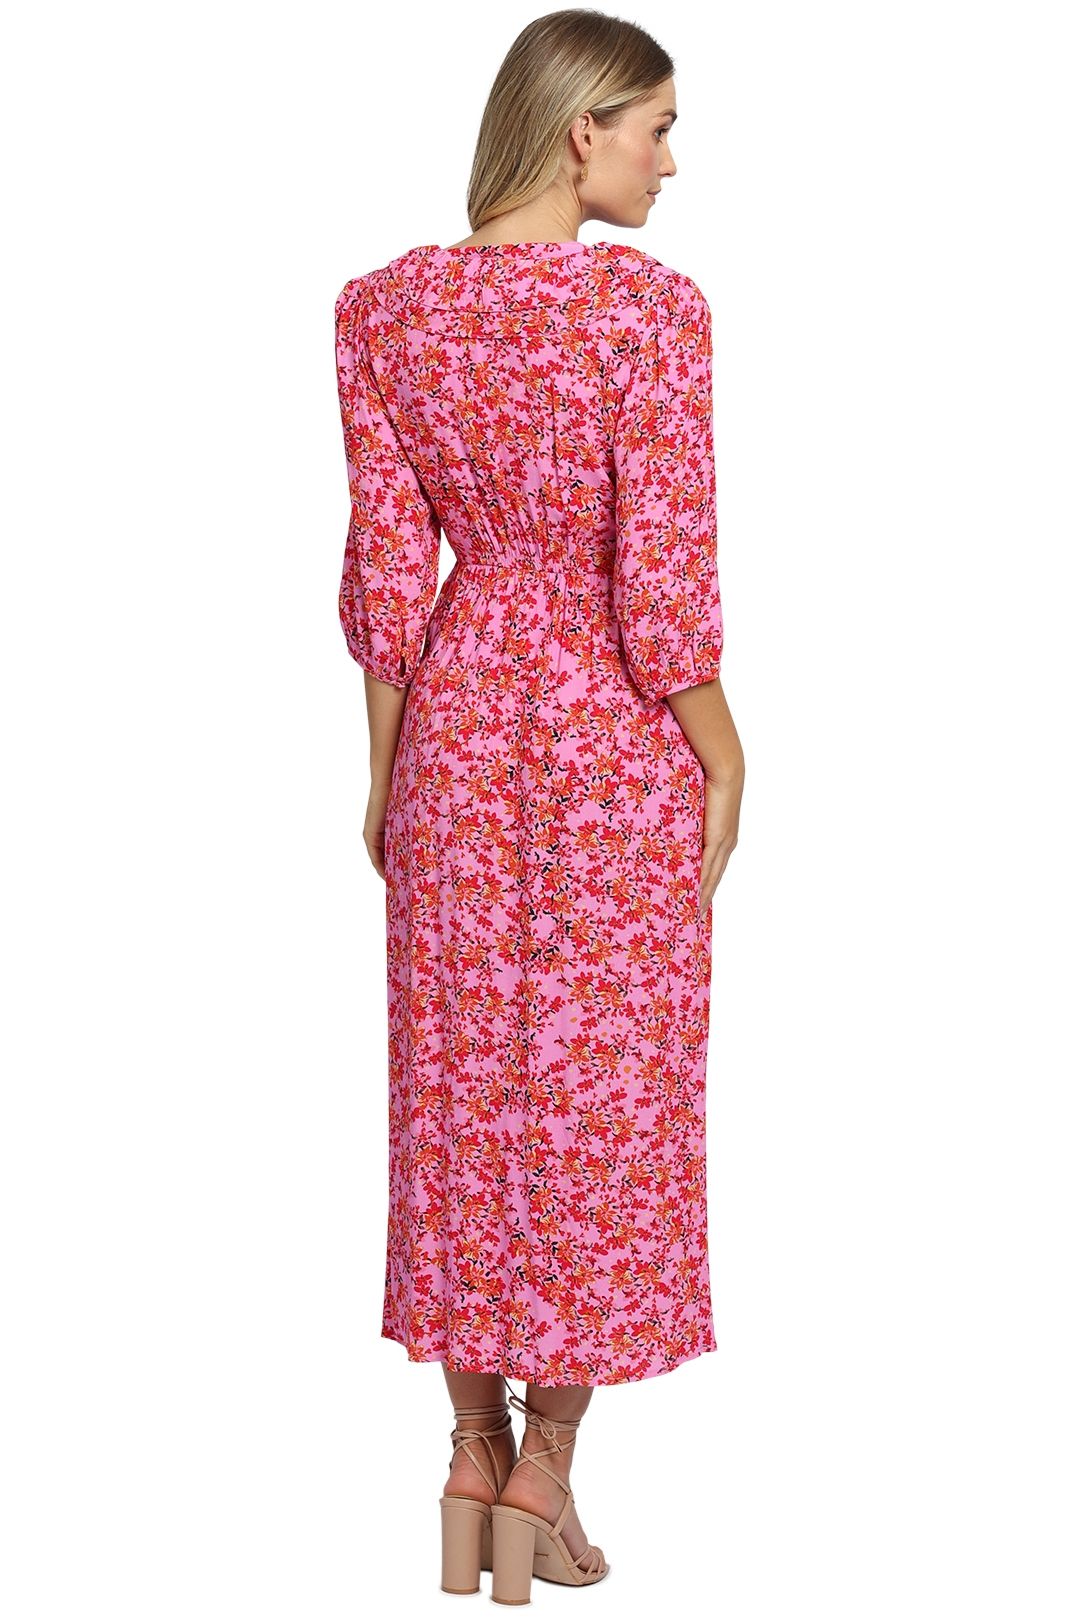 Kachel Poppy Dress Pink Ditzy Midi